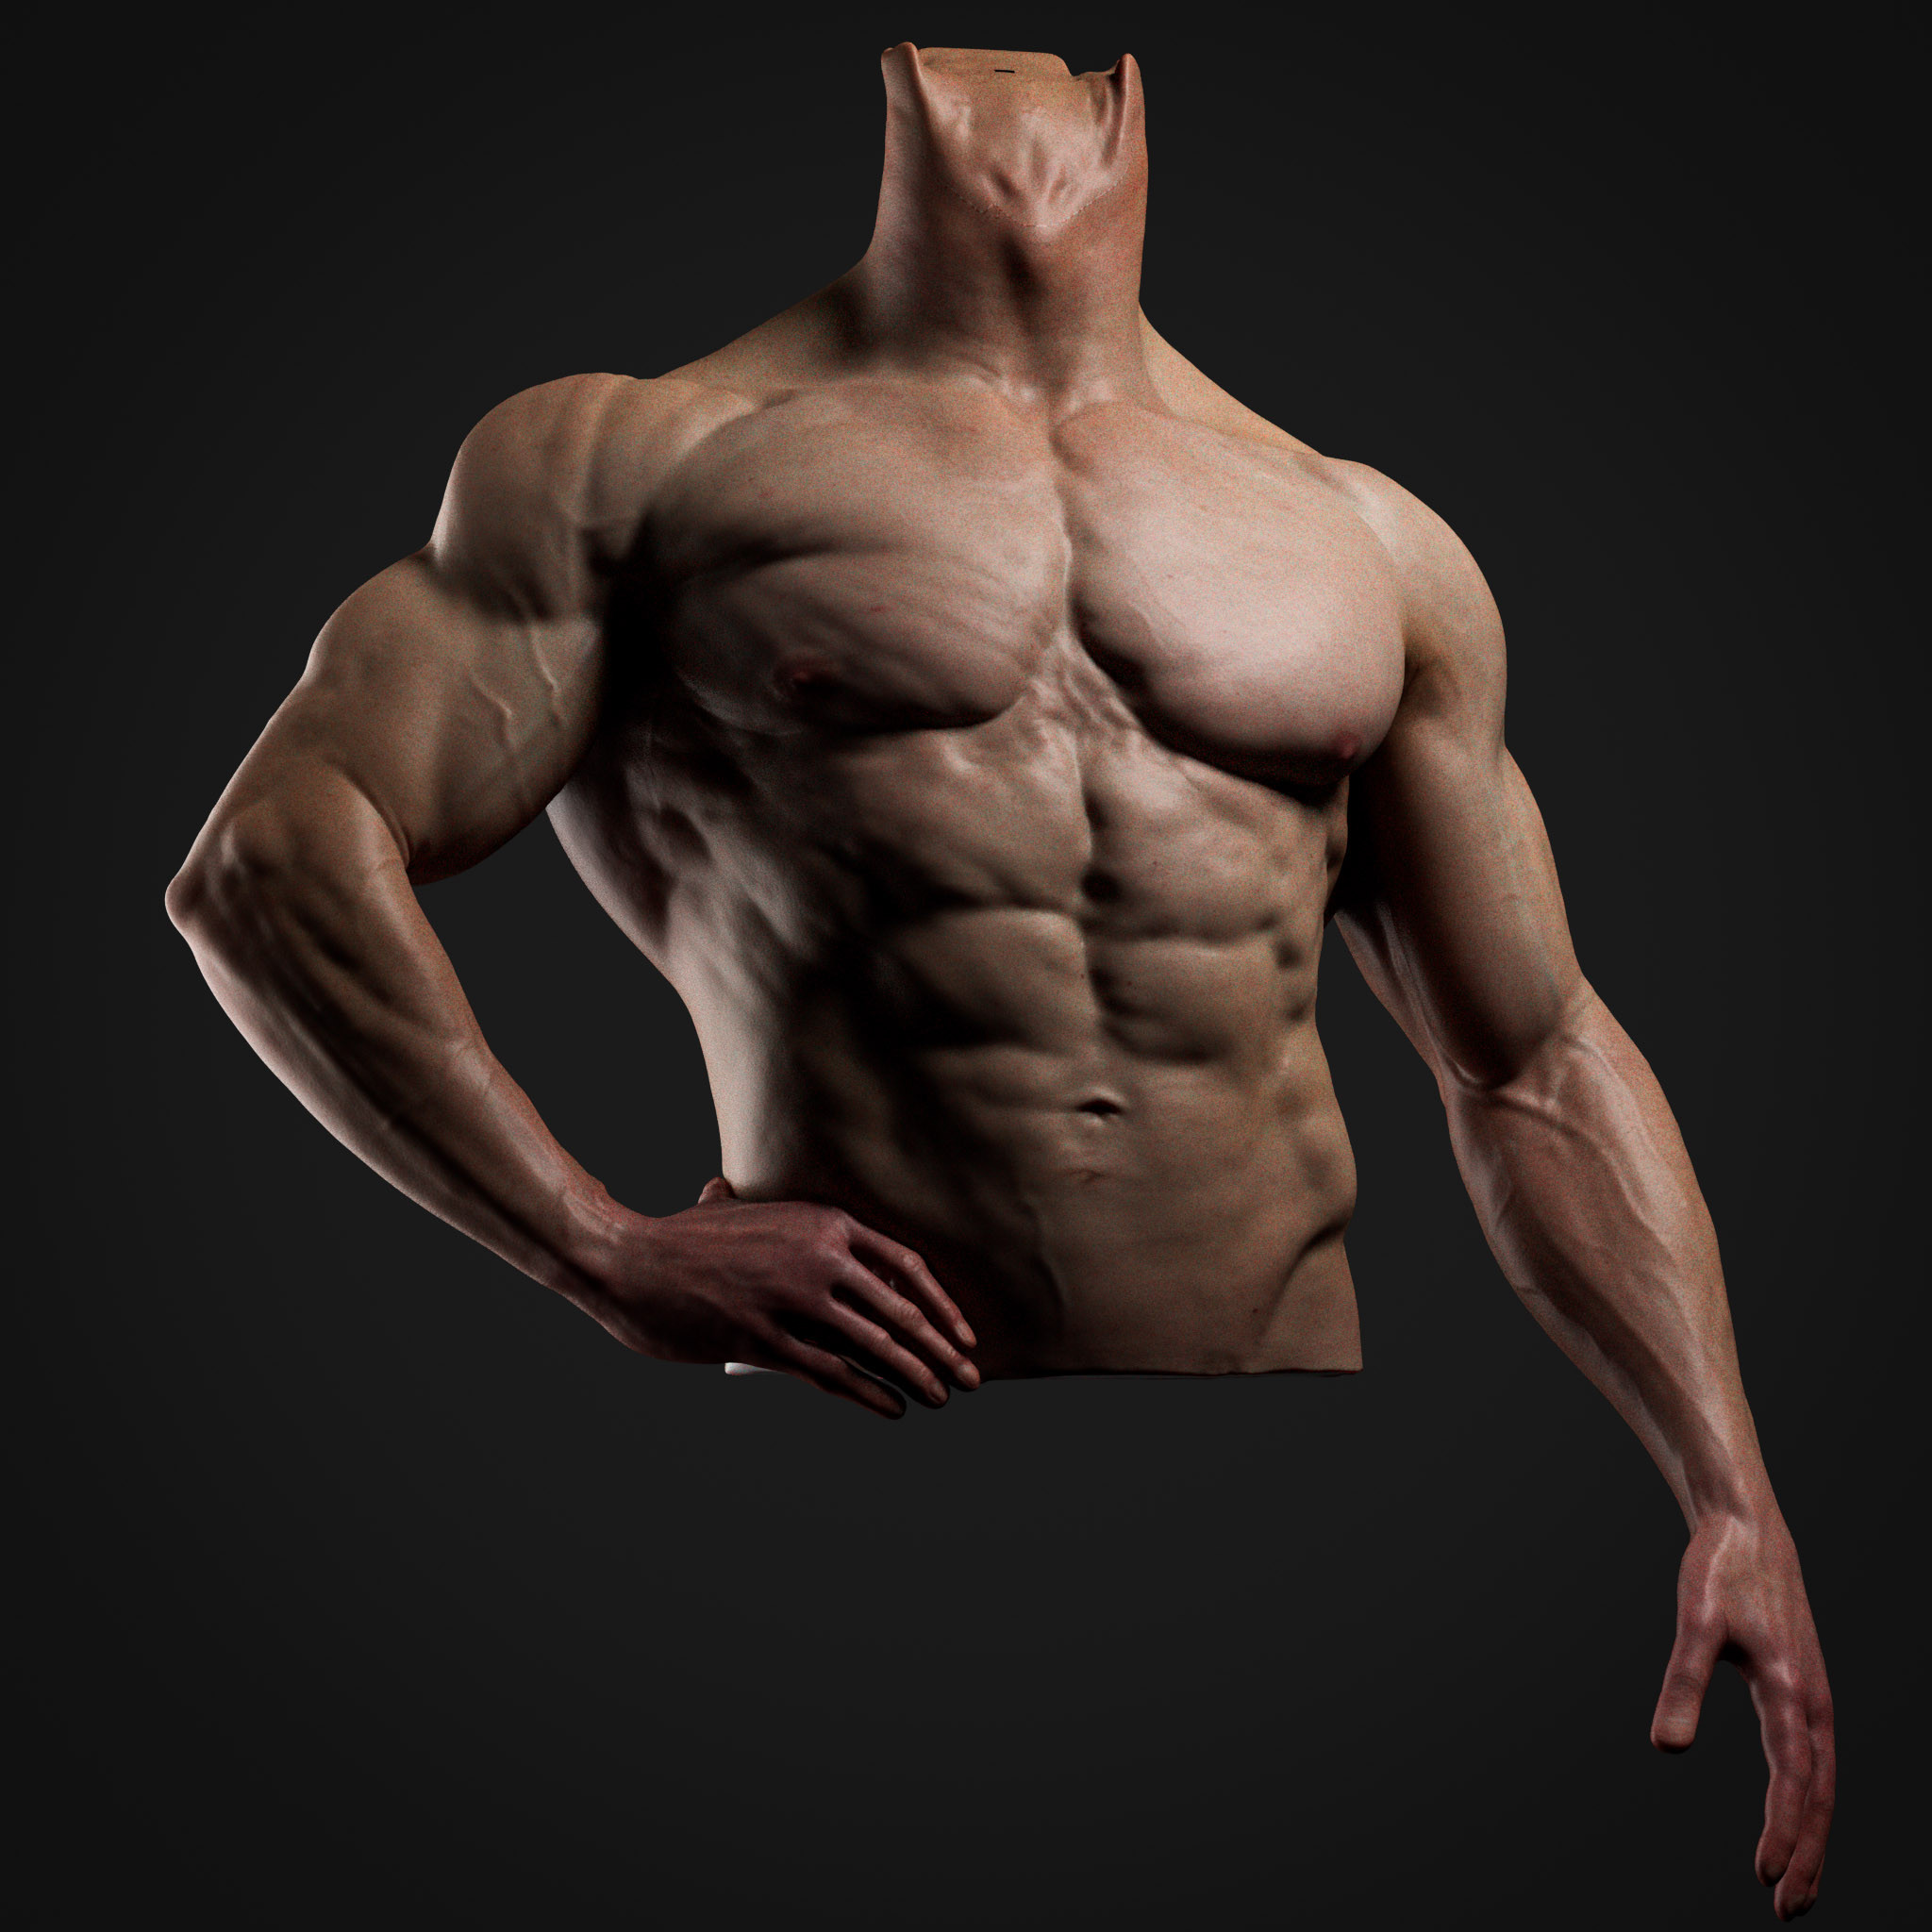 Zbrush anatomy study, muscles